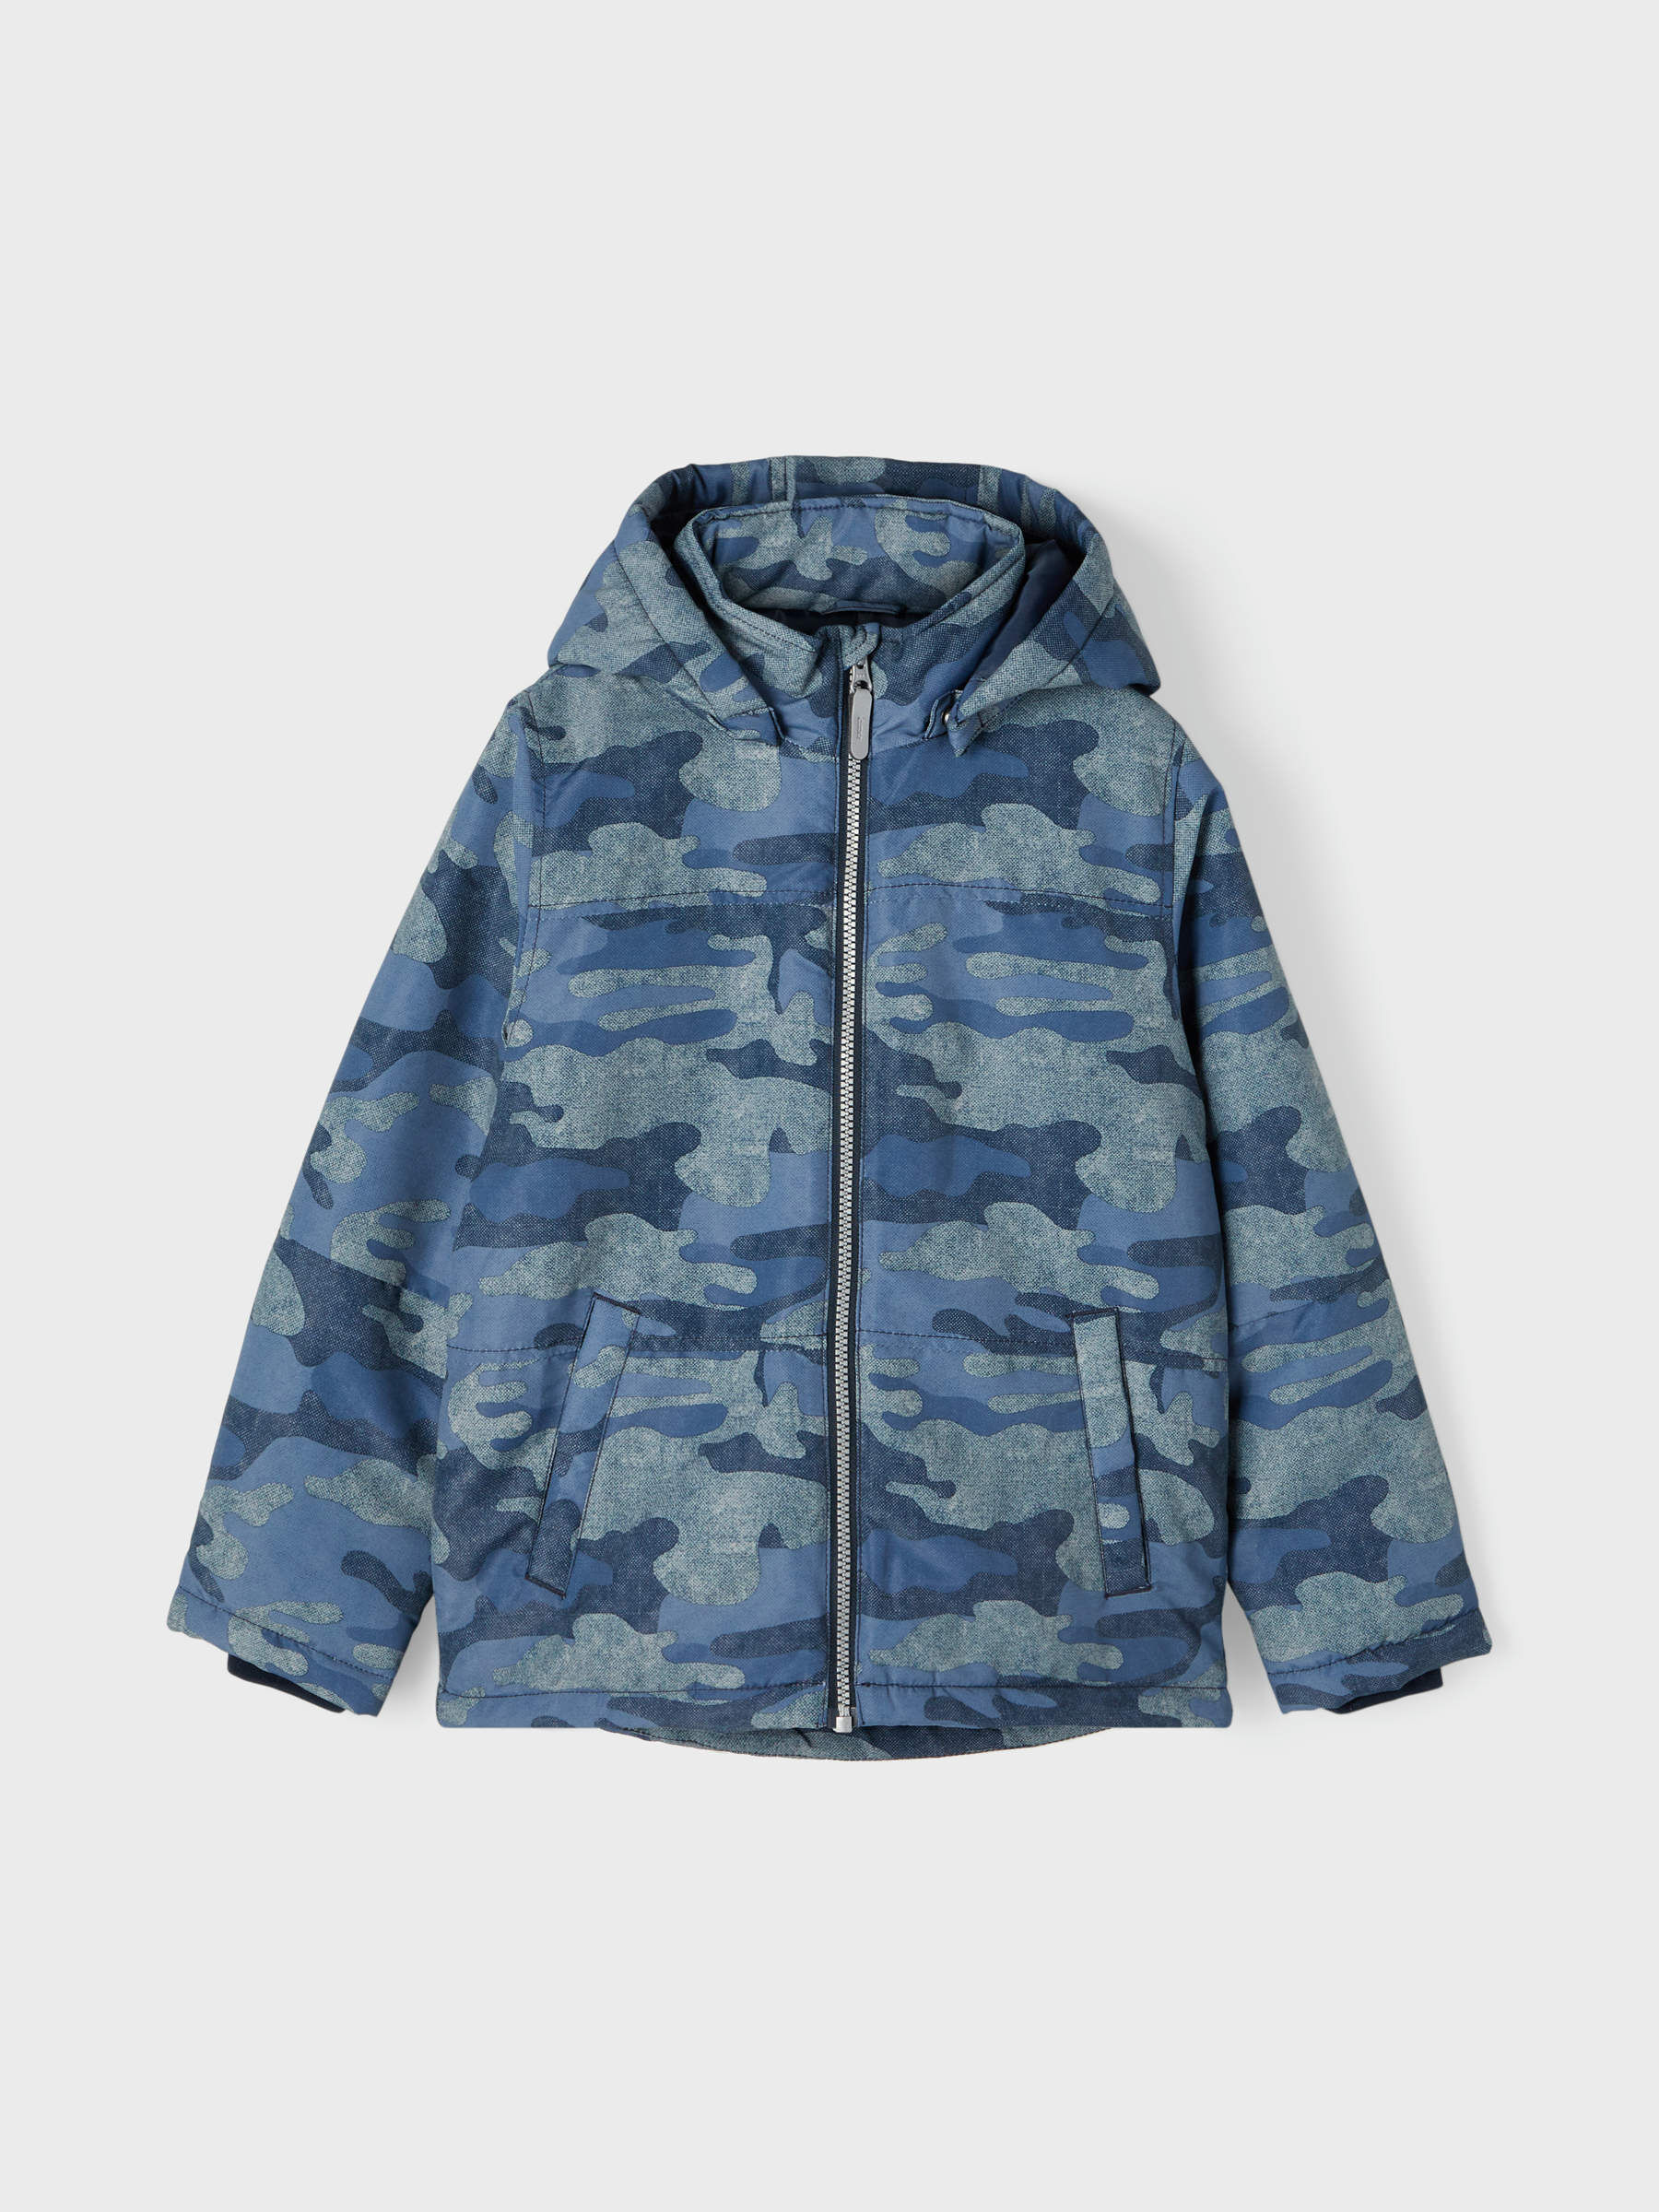 wasserdicht Camouflage-Jacke mit Kapuze Kinder-Regenbekleidung für das Spielen im Freien104-110 HZXVic Kinder-Regenmantel für Jungen 